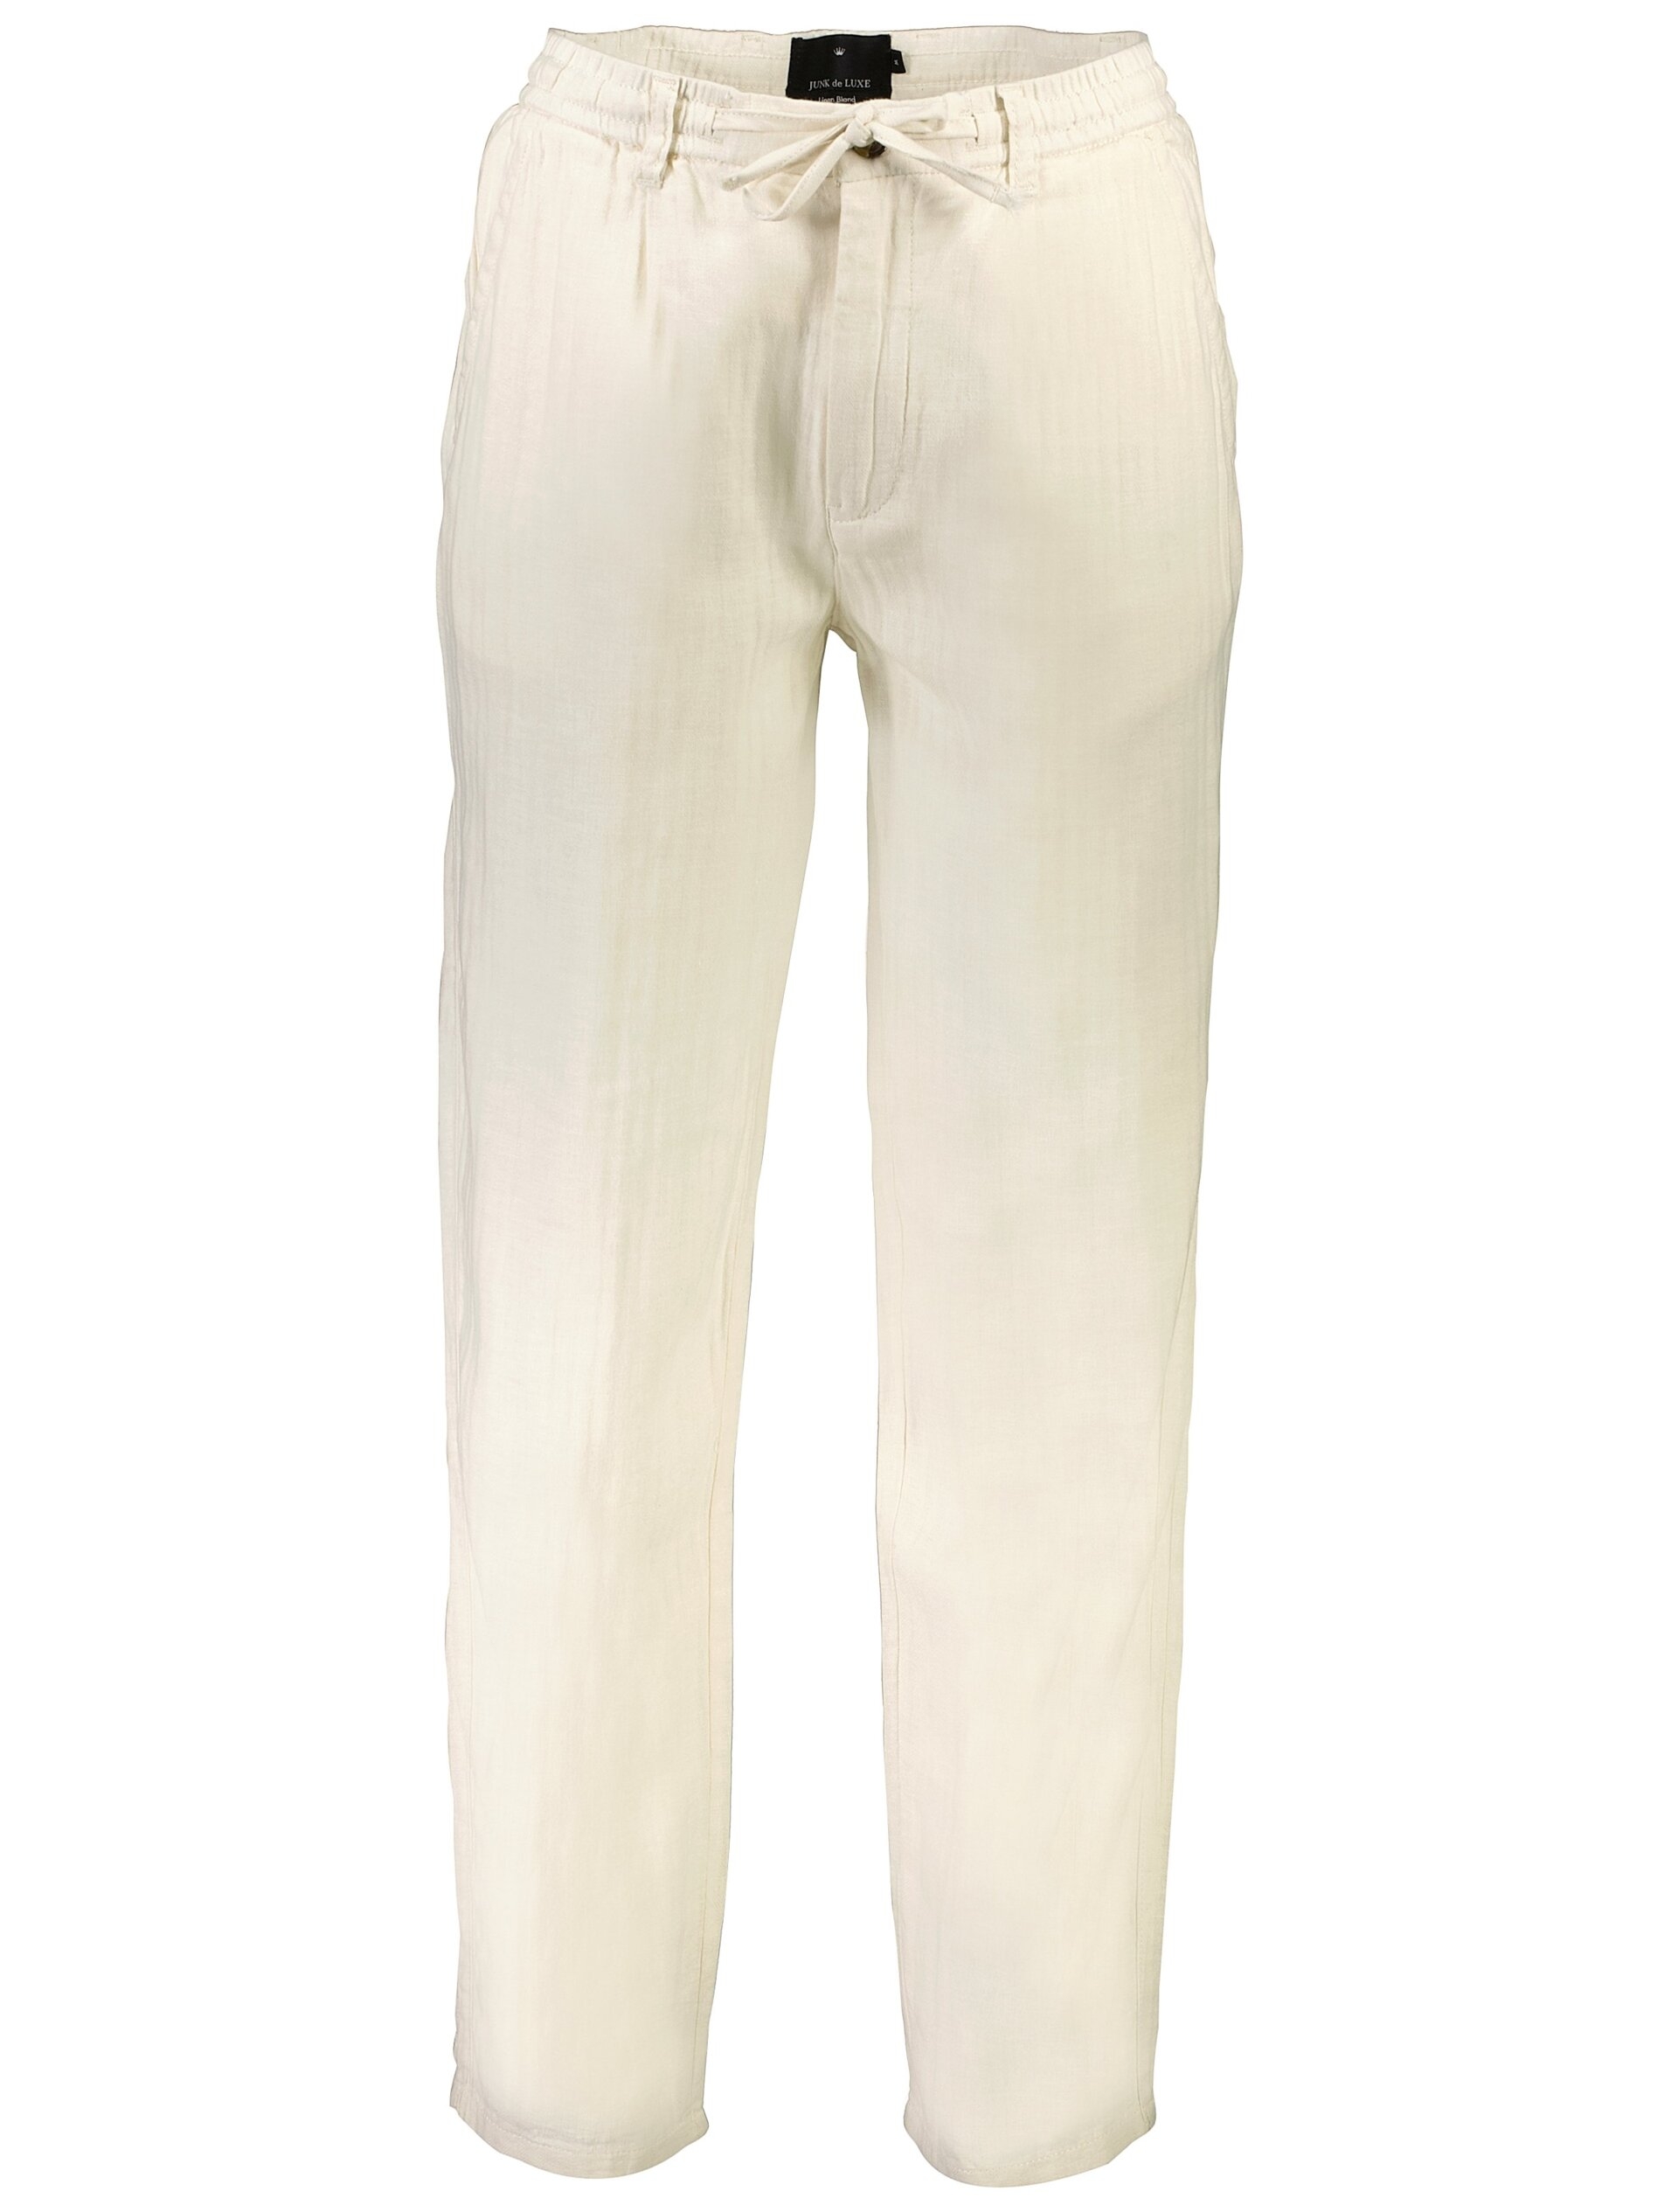 Junk de Luxe Linen pants white / white